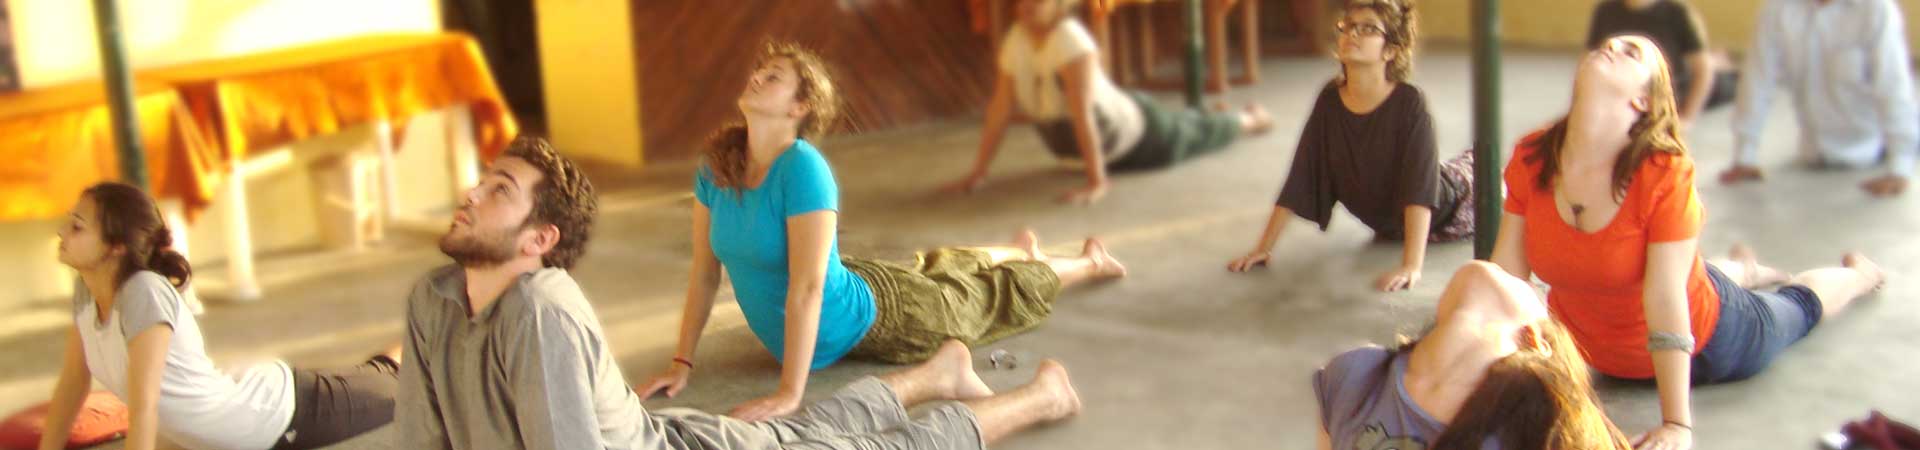 Yoga e aventura voluntária no Himalaia